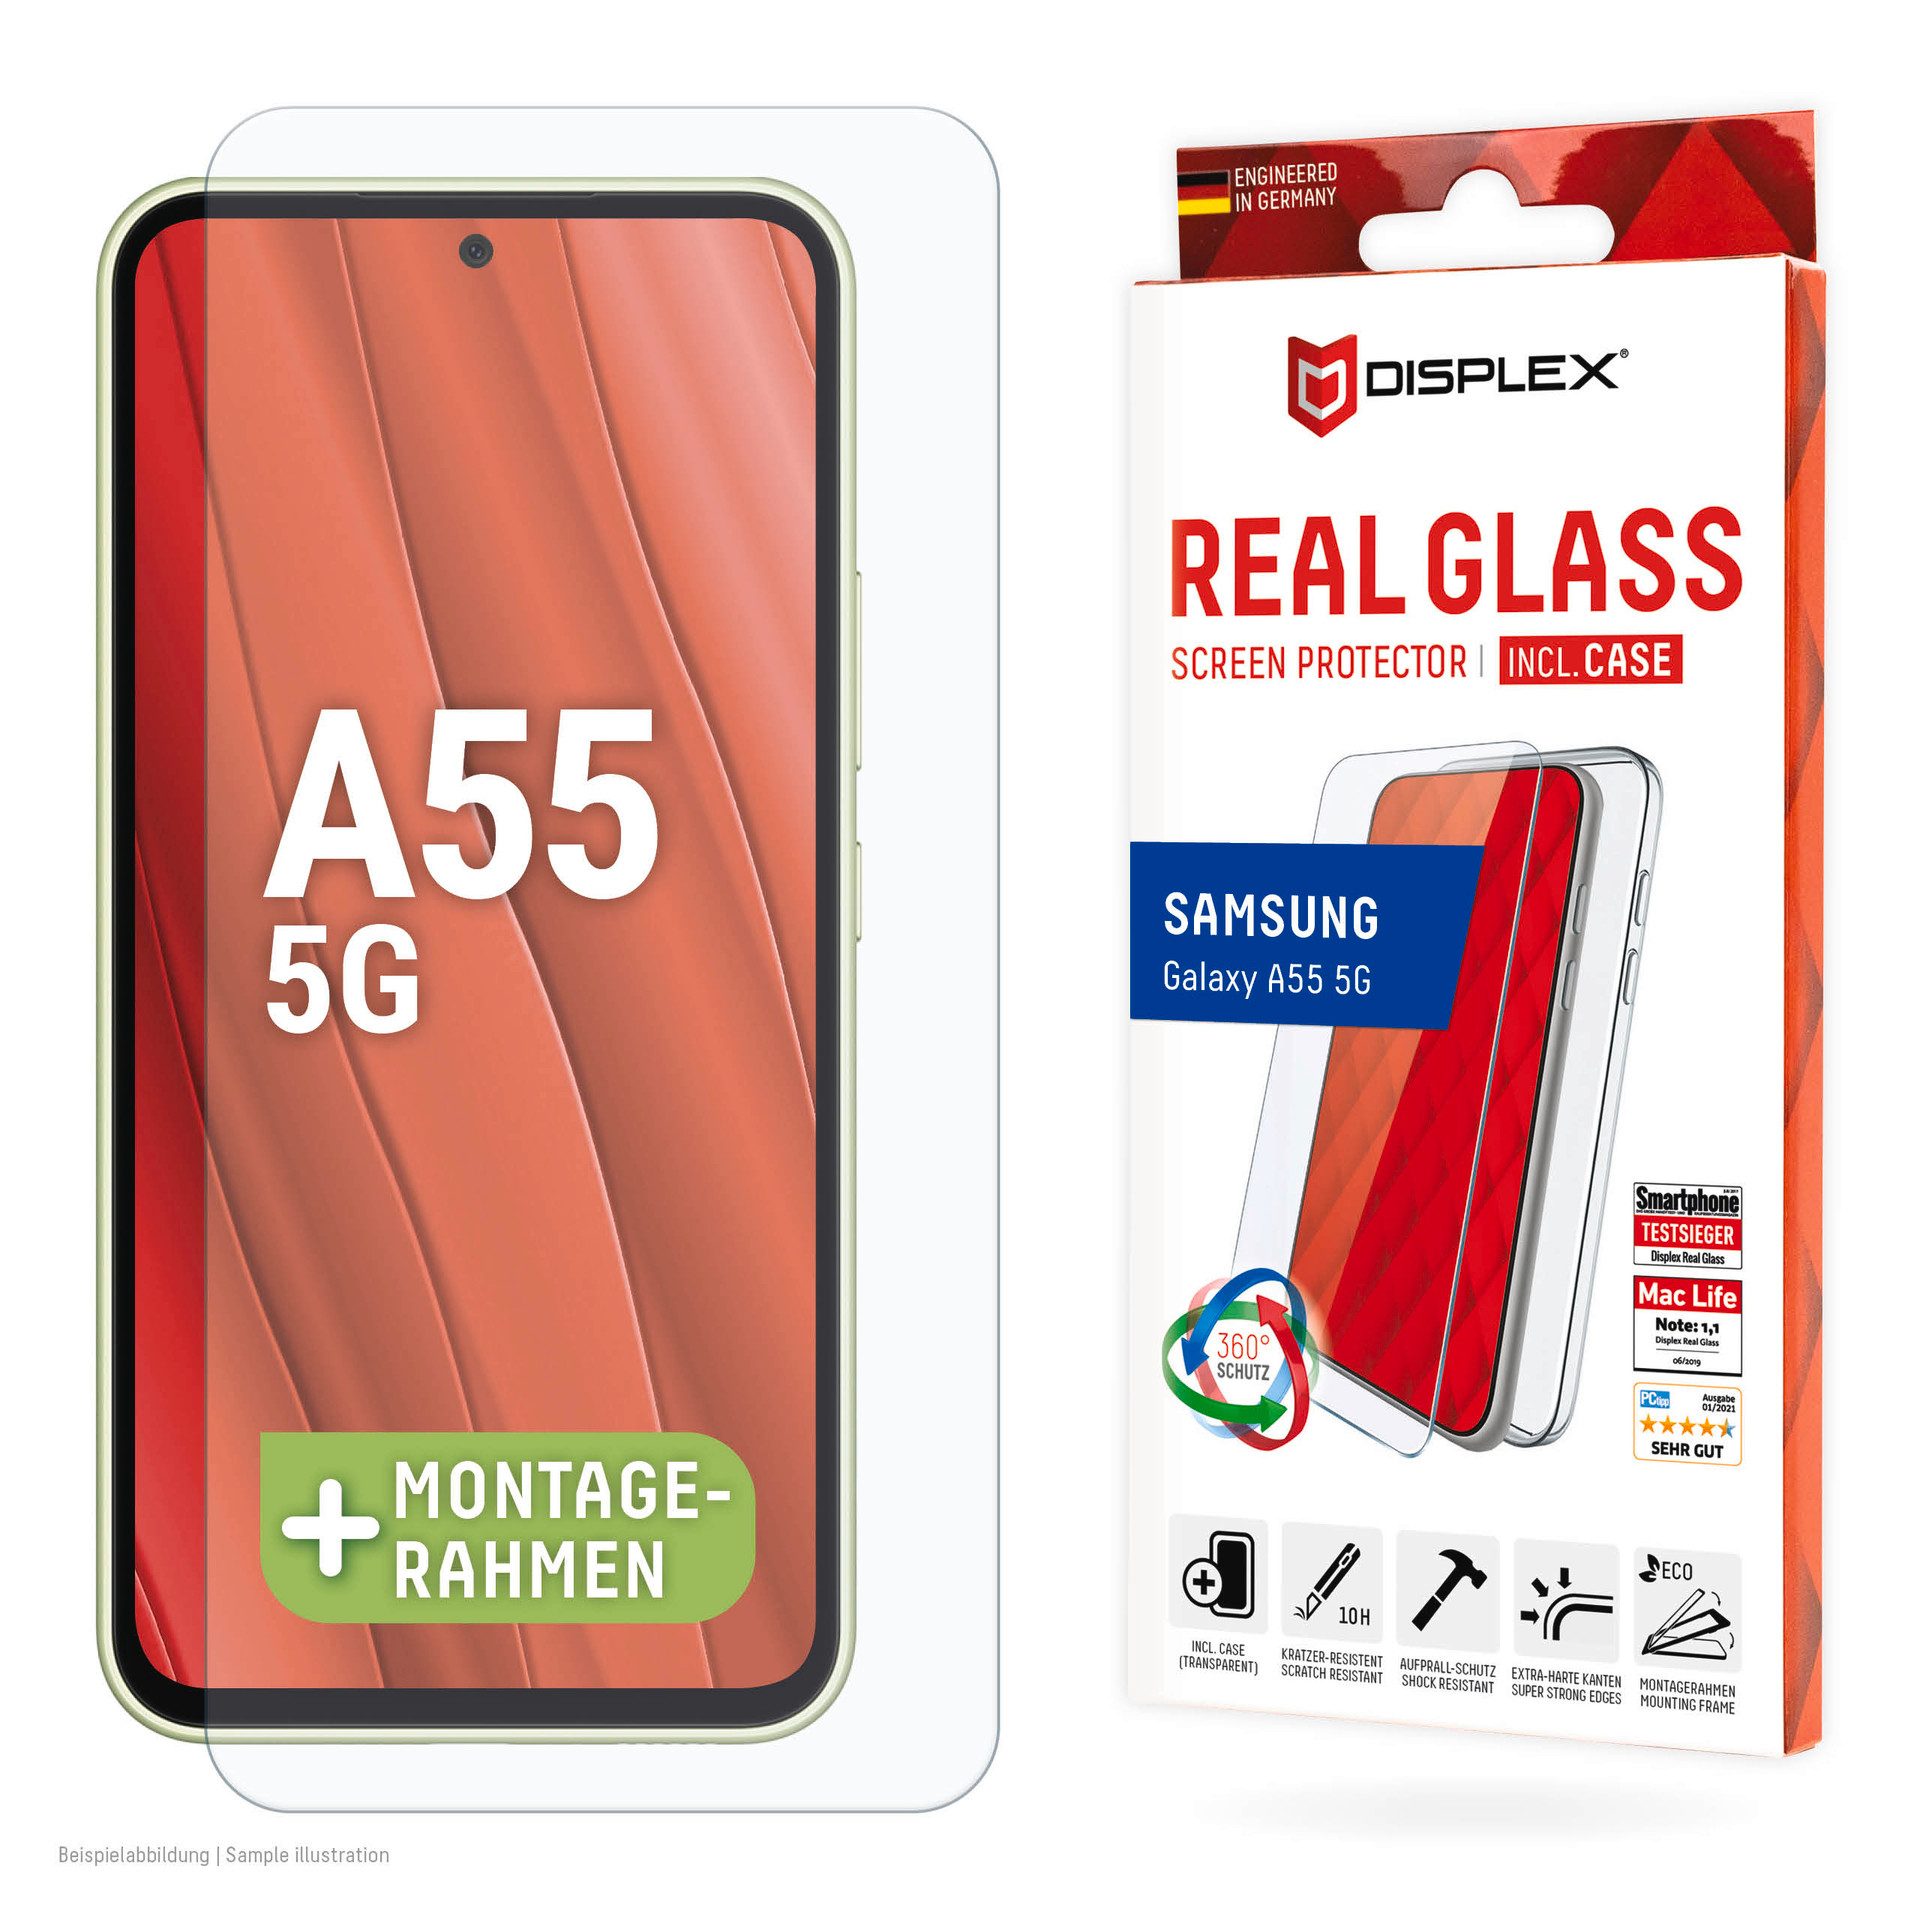 Displex Real Glass + Case für Samsung Galaxy A55 5G, Displayschutzglas, 1 Stück, Bildschirmschutz, Displayschutzfolie,Einfach anbringen,kratz-&stoßfest